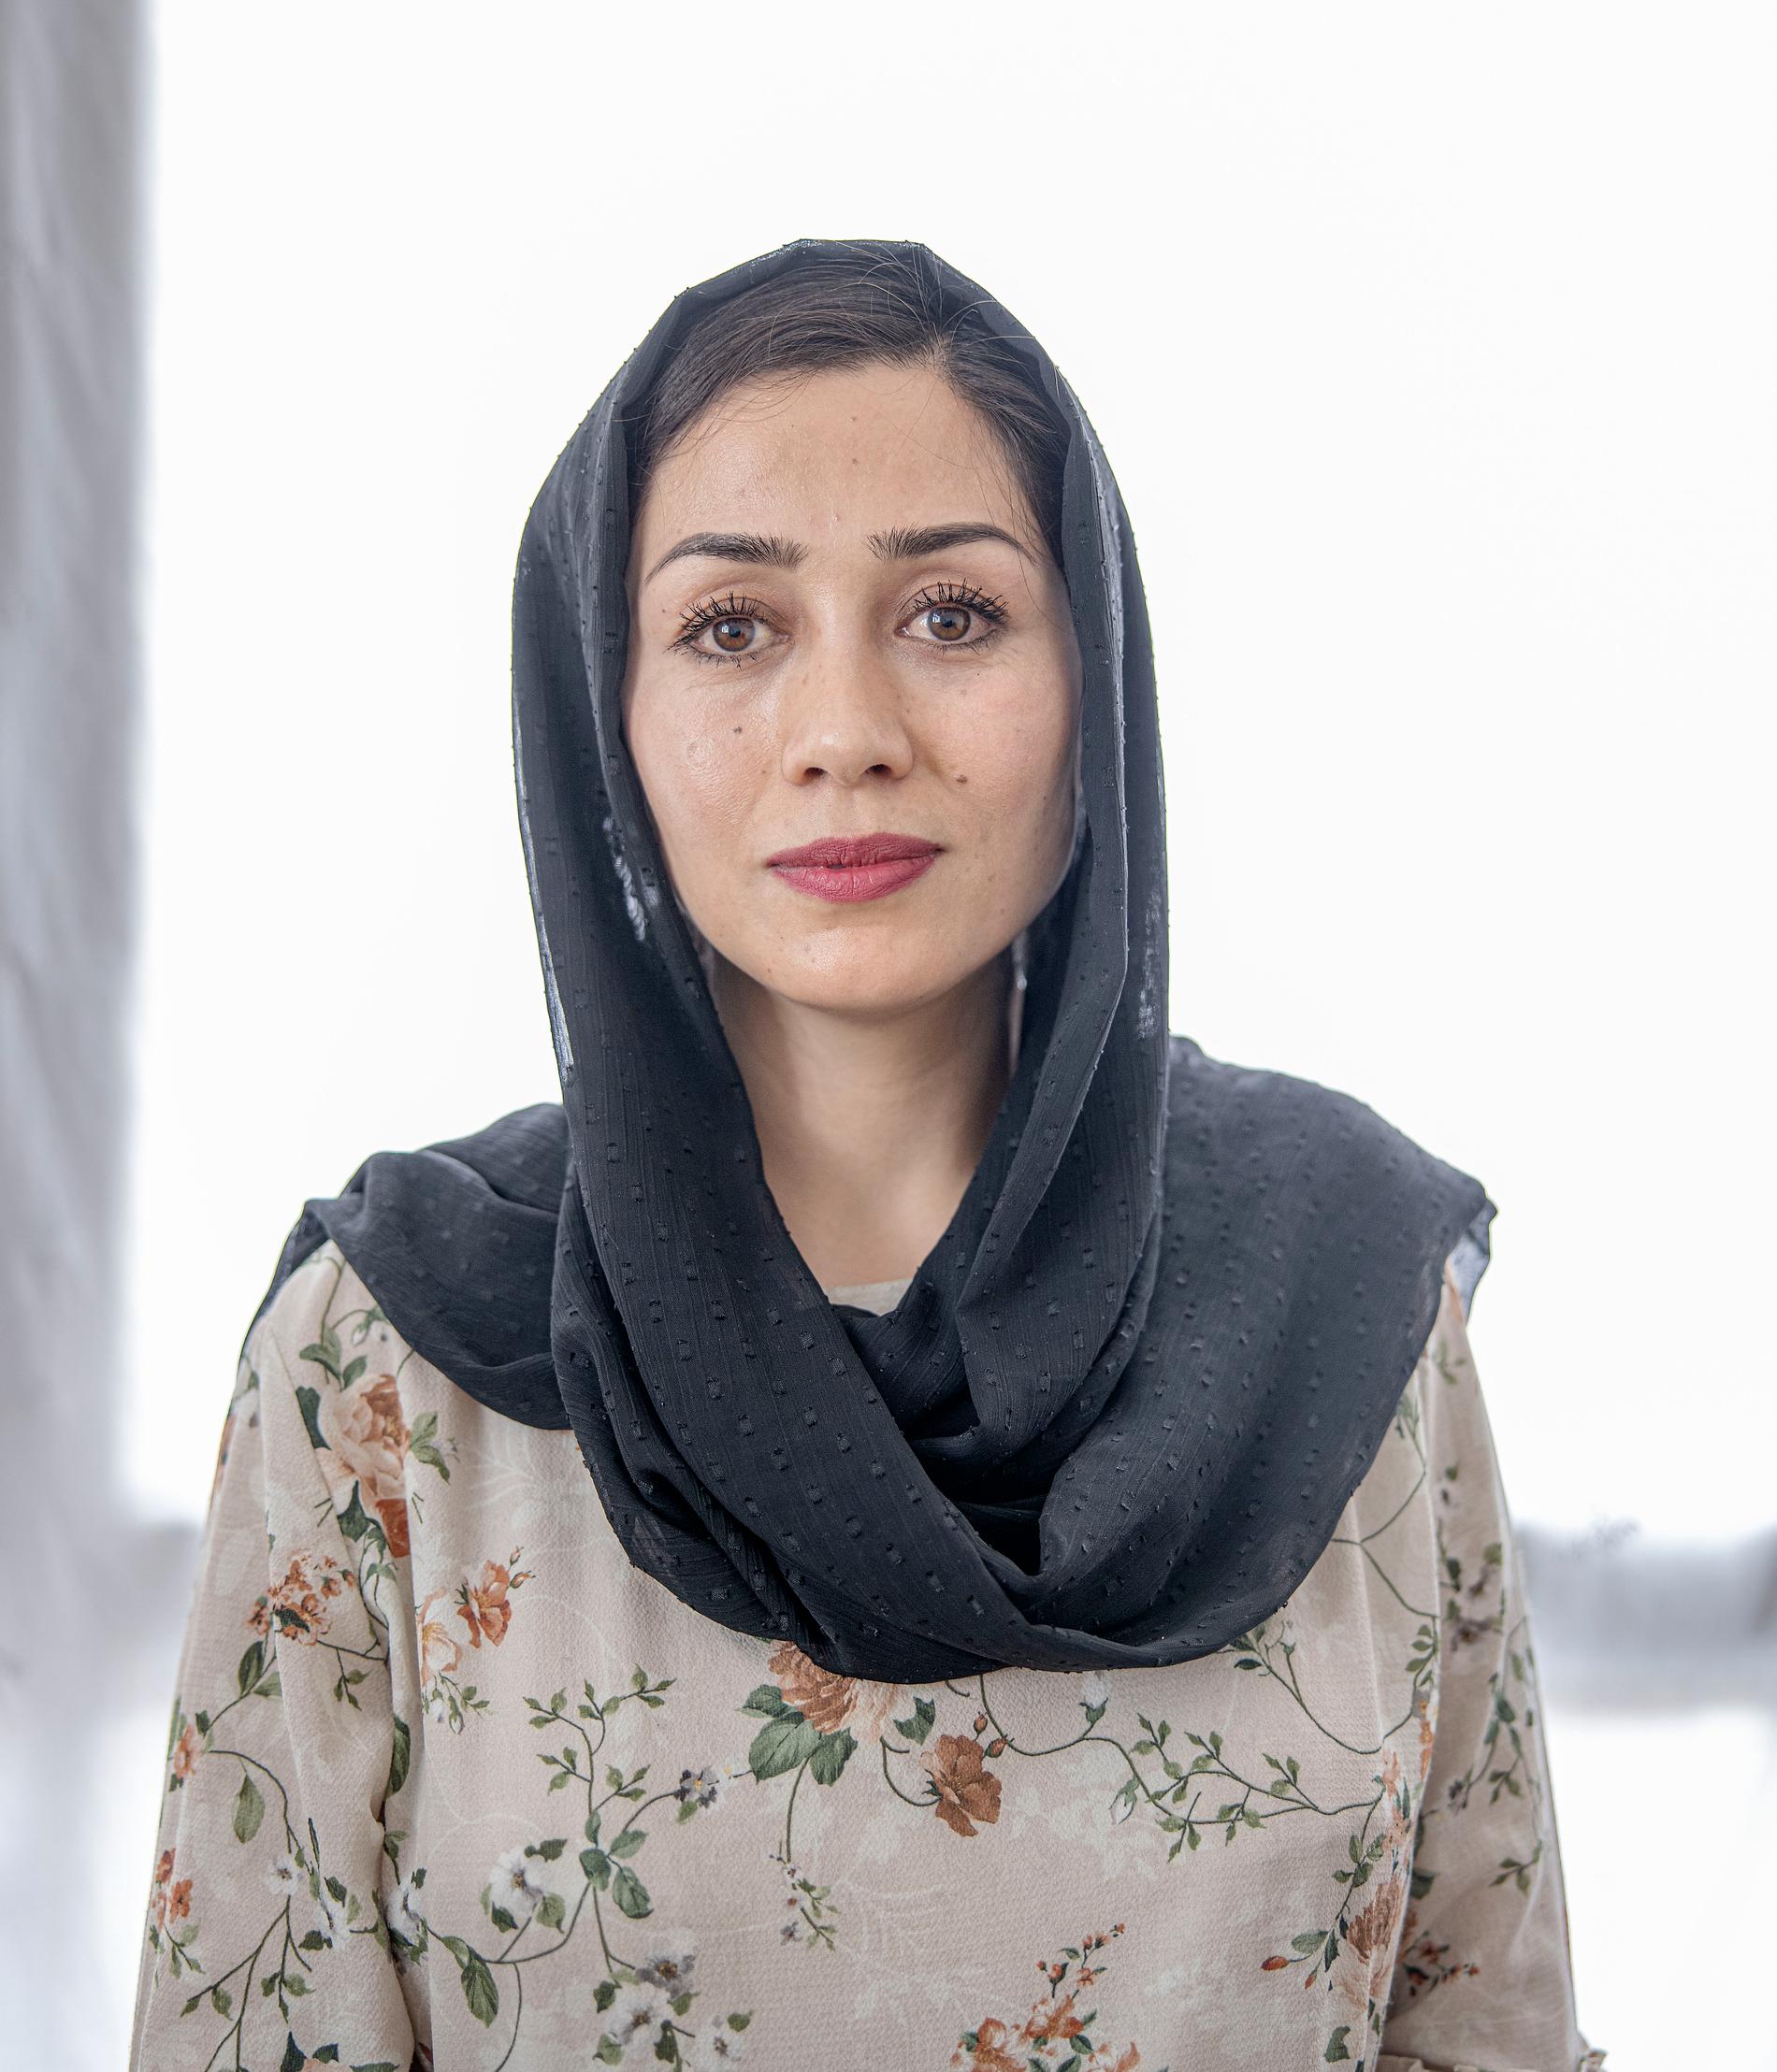 Mona Hosseini lever som ogift, en stor risk för afghanska kvinnor.